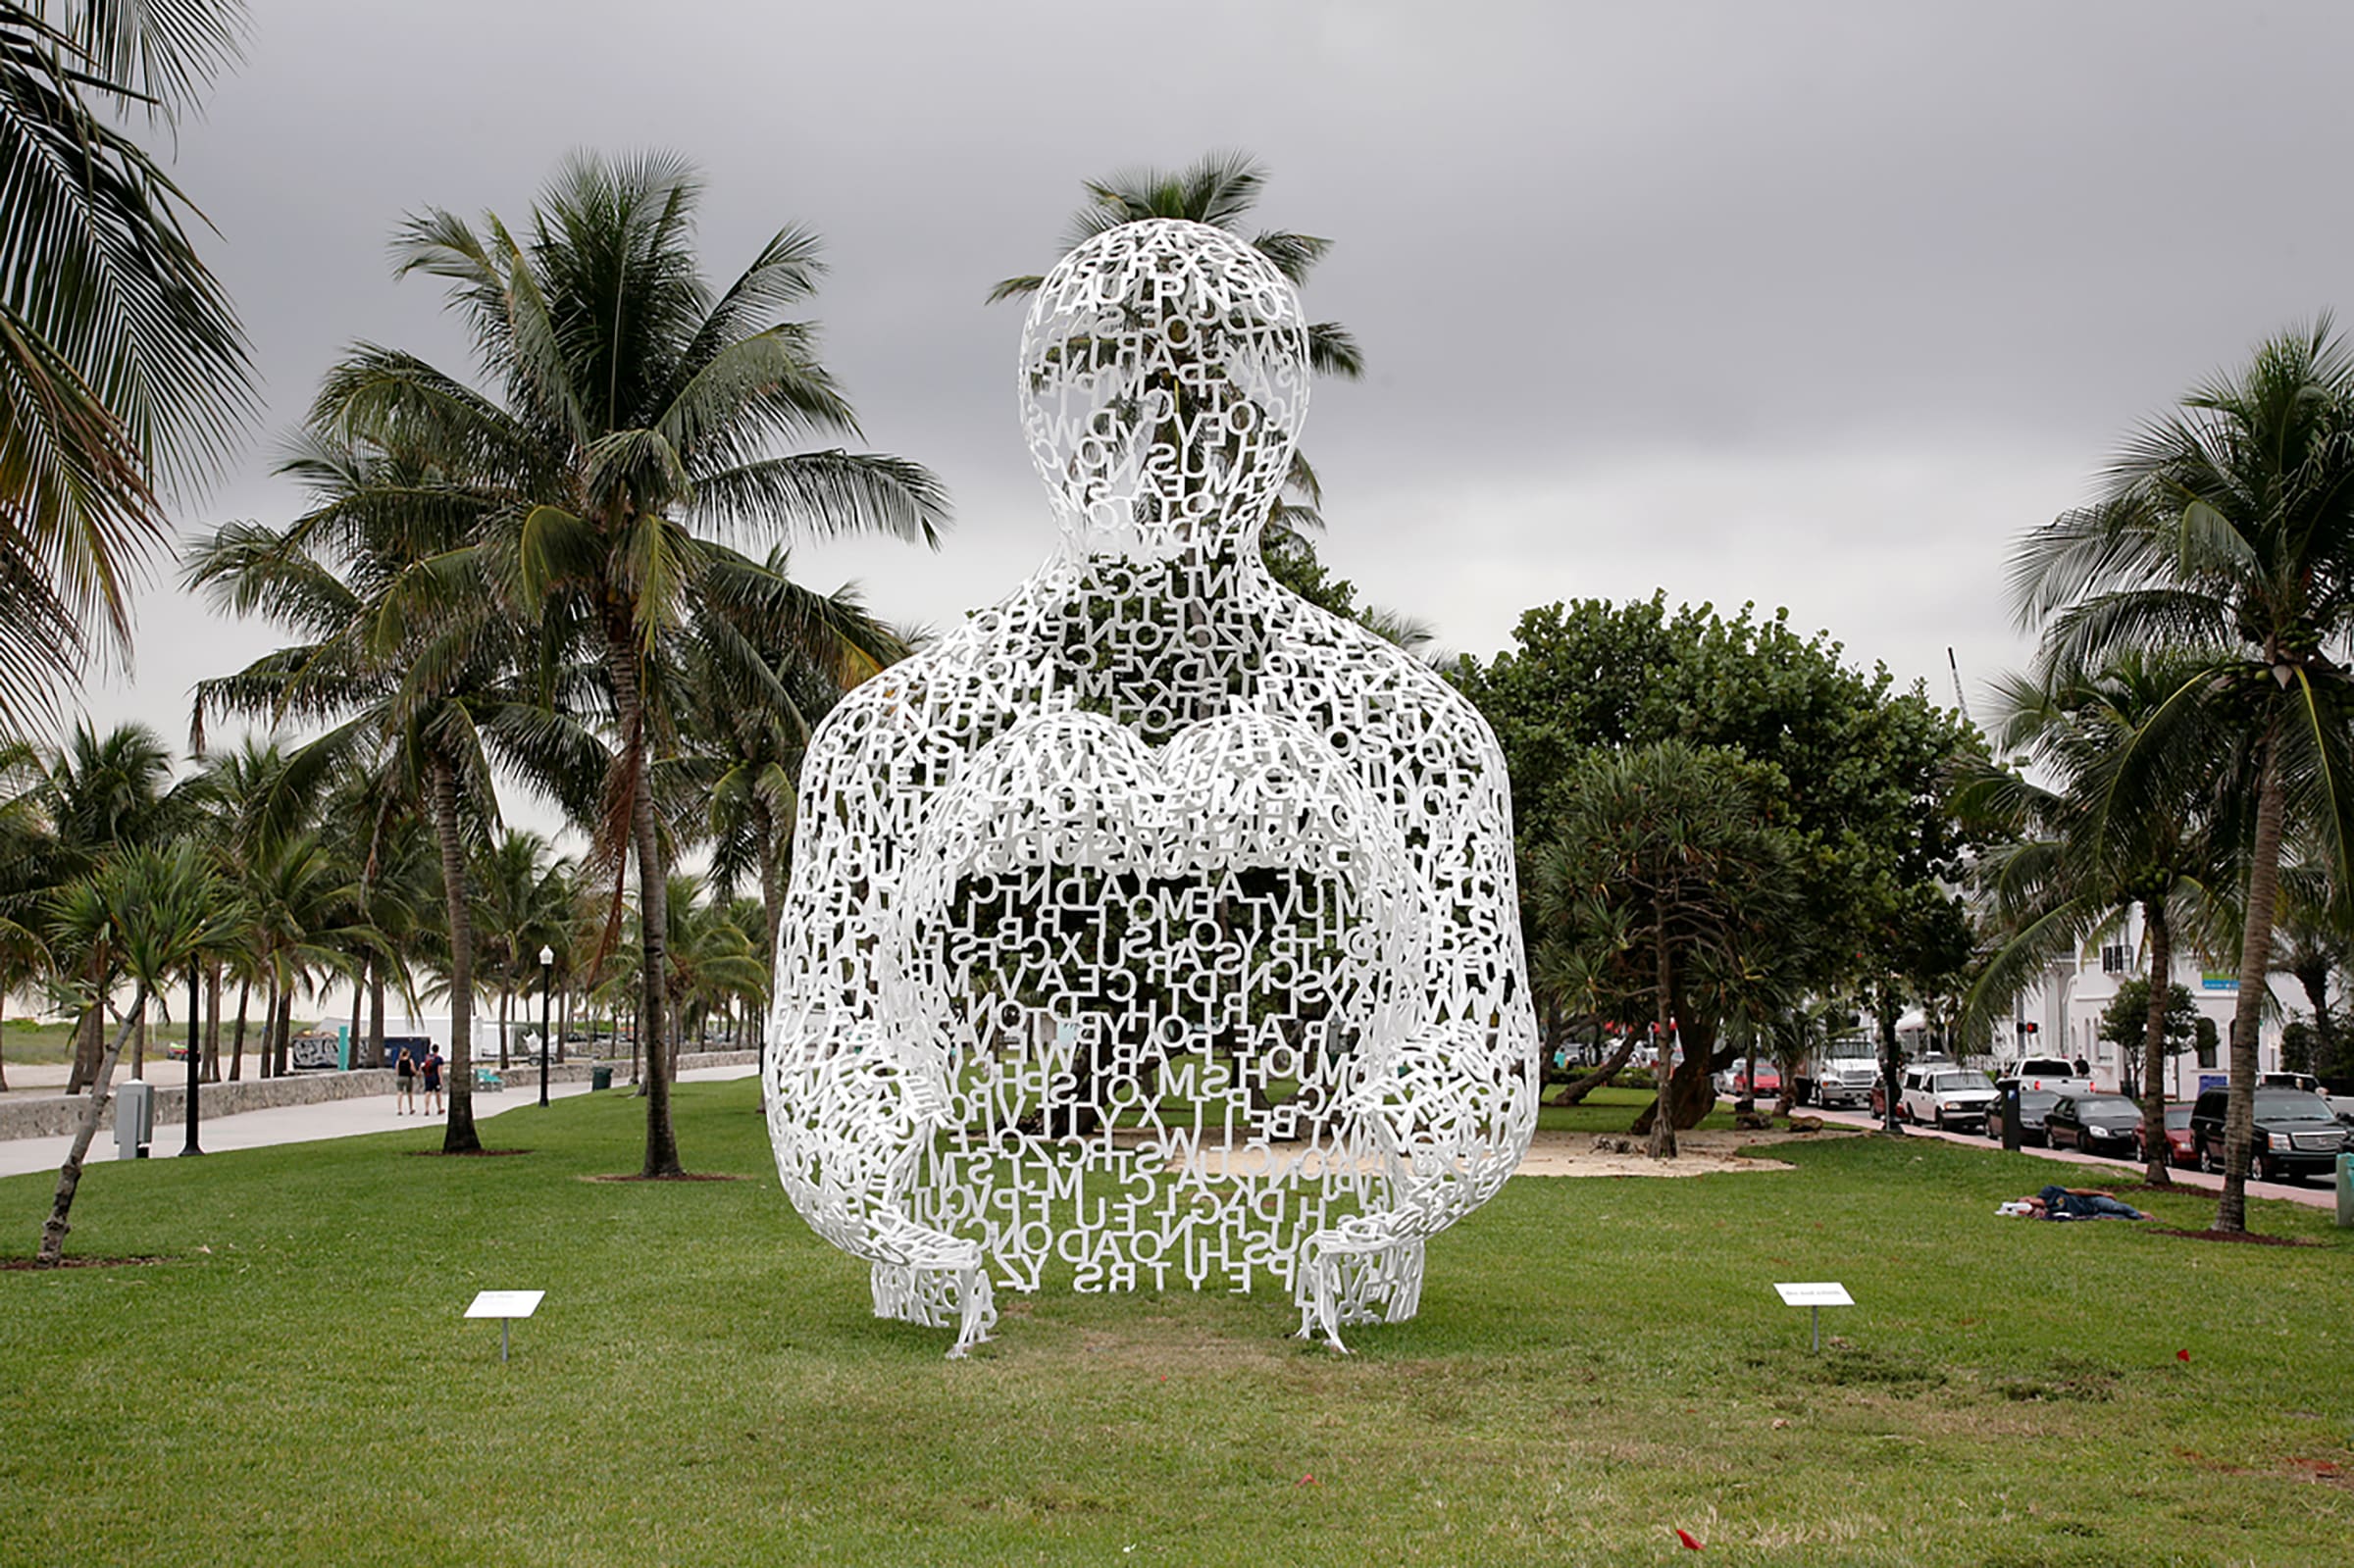 A sculpture by Jaume Plensa during Art Basel Miami Beach.